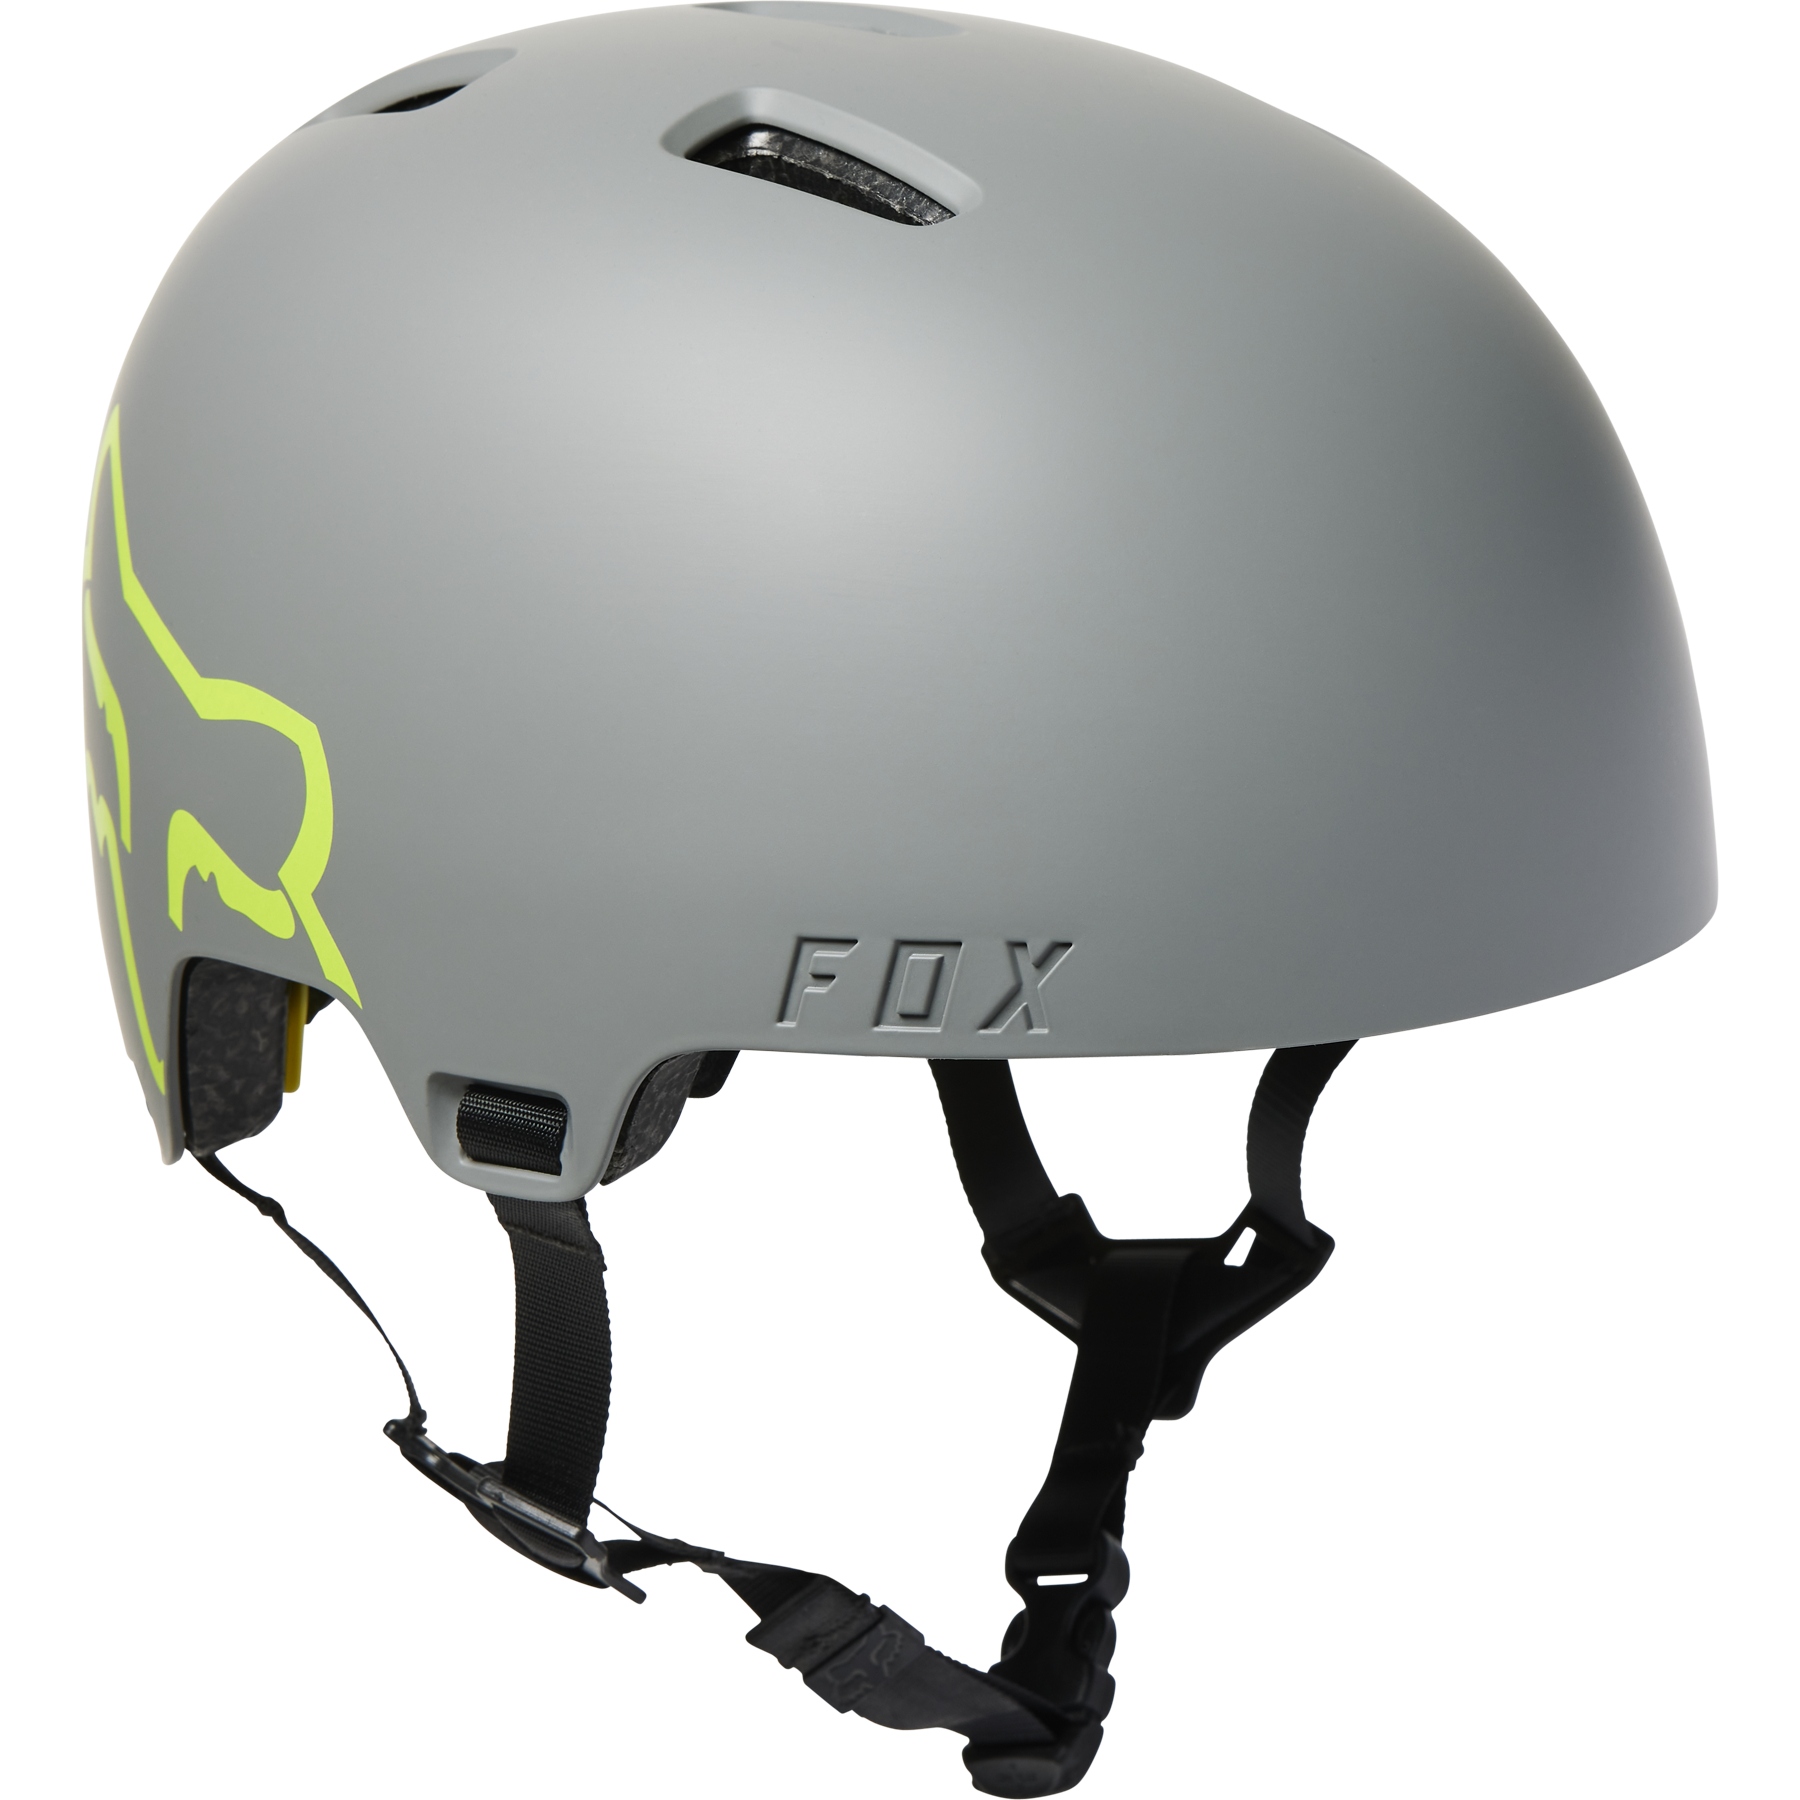 Produktbild von FOX Flight MIPS Helm - grau